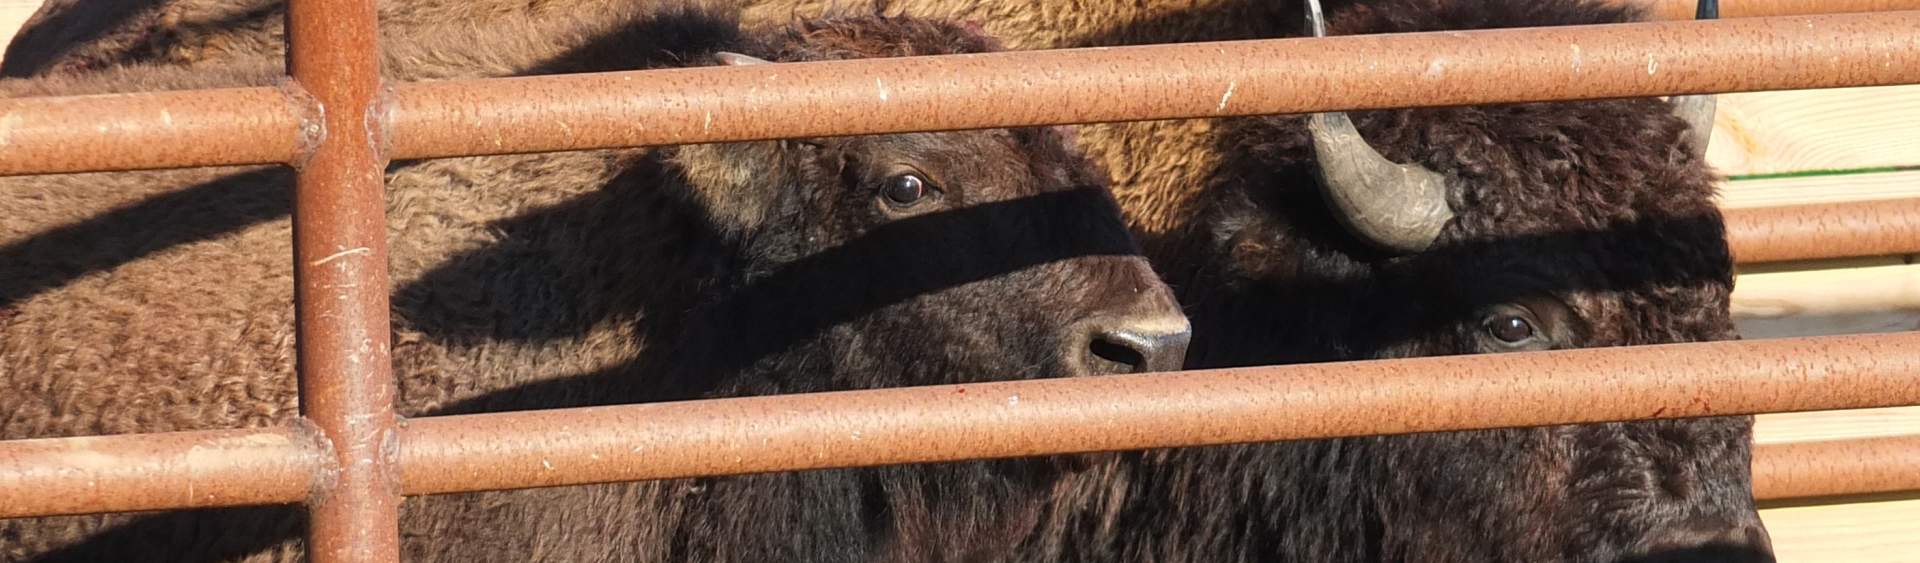 Bison Visit the Vet at Kankakee Sands